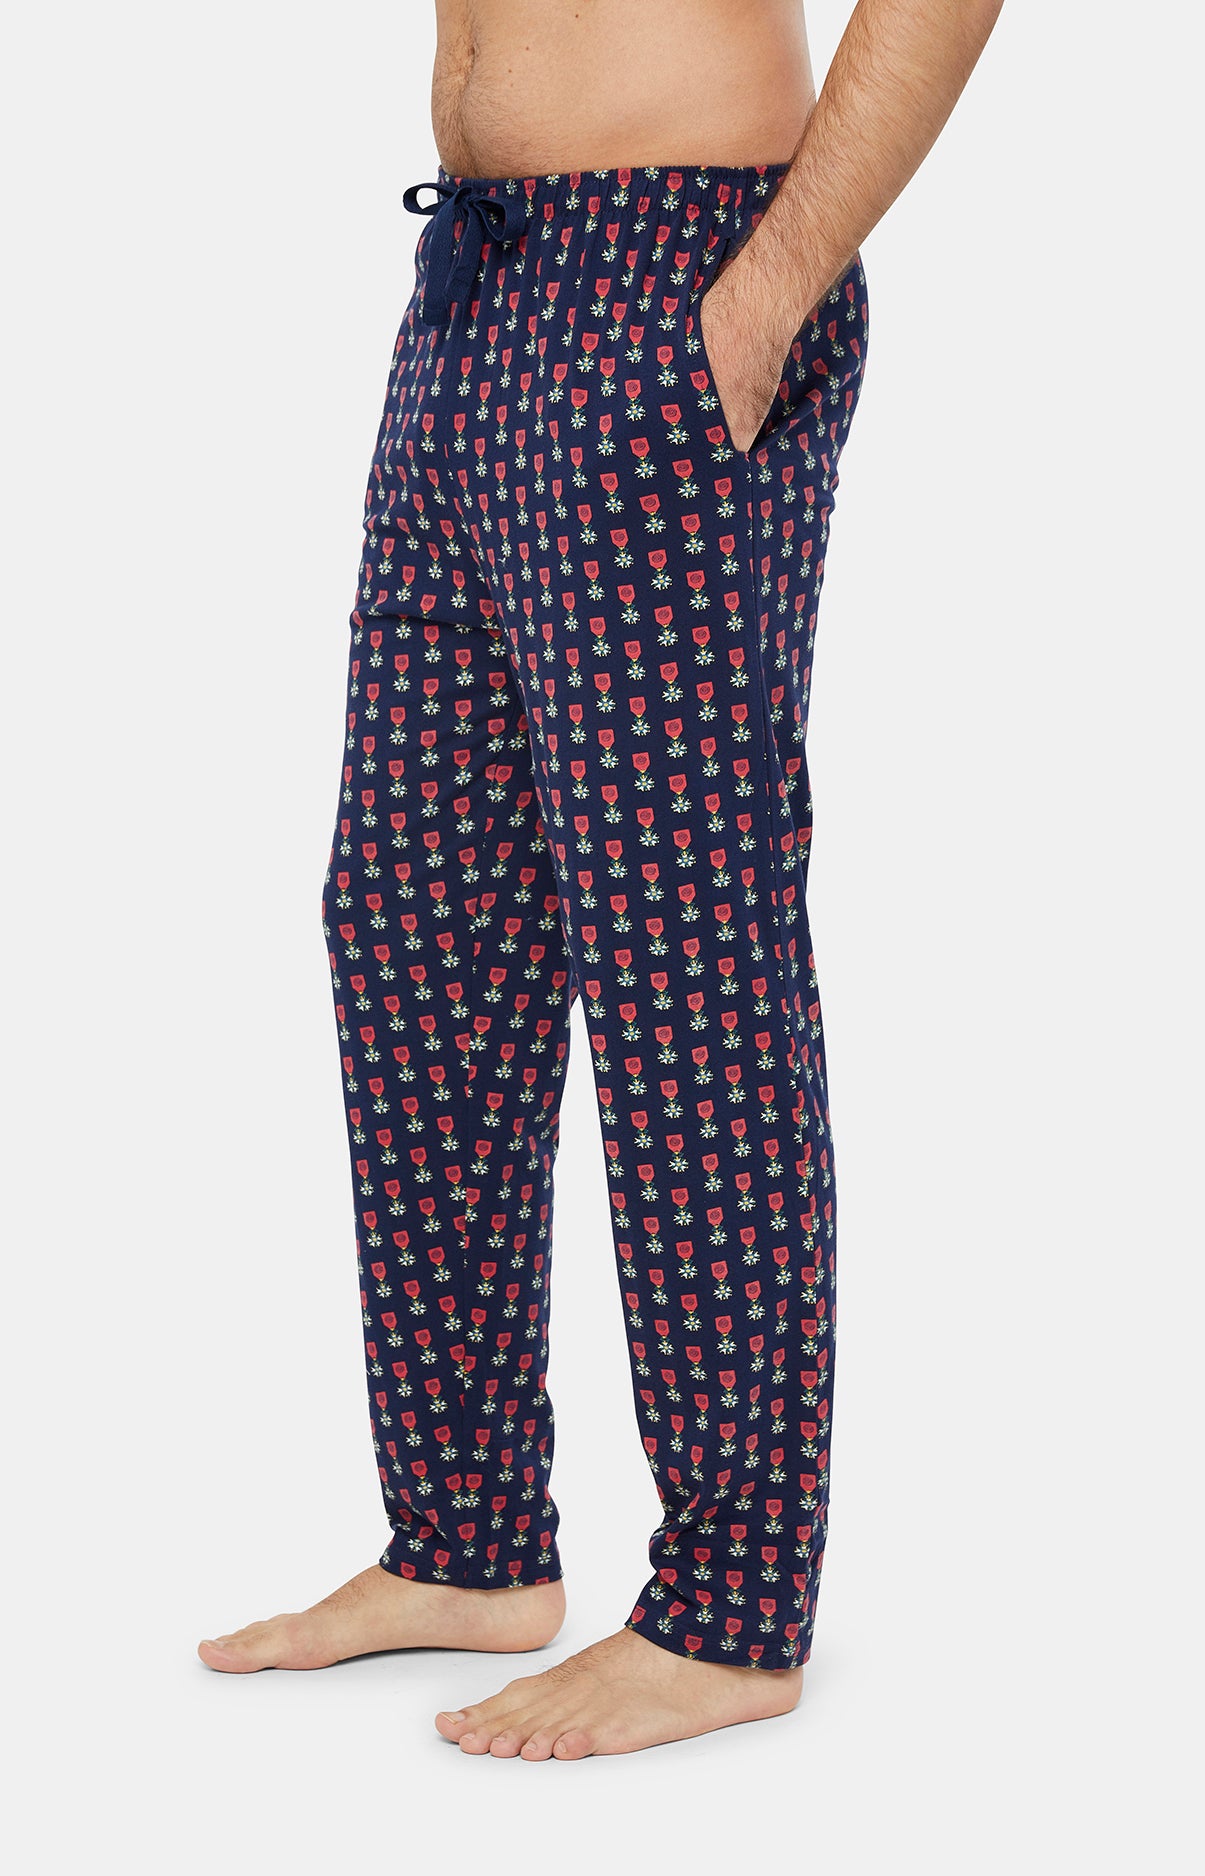 Pyjama - Légion Dormeur